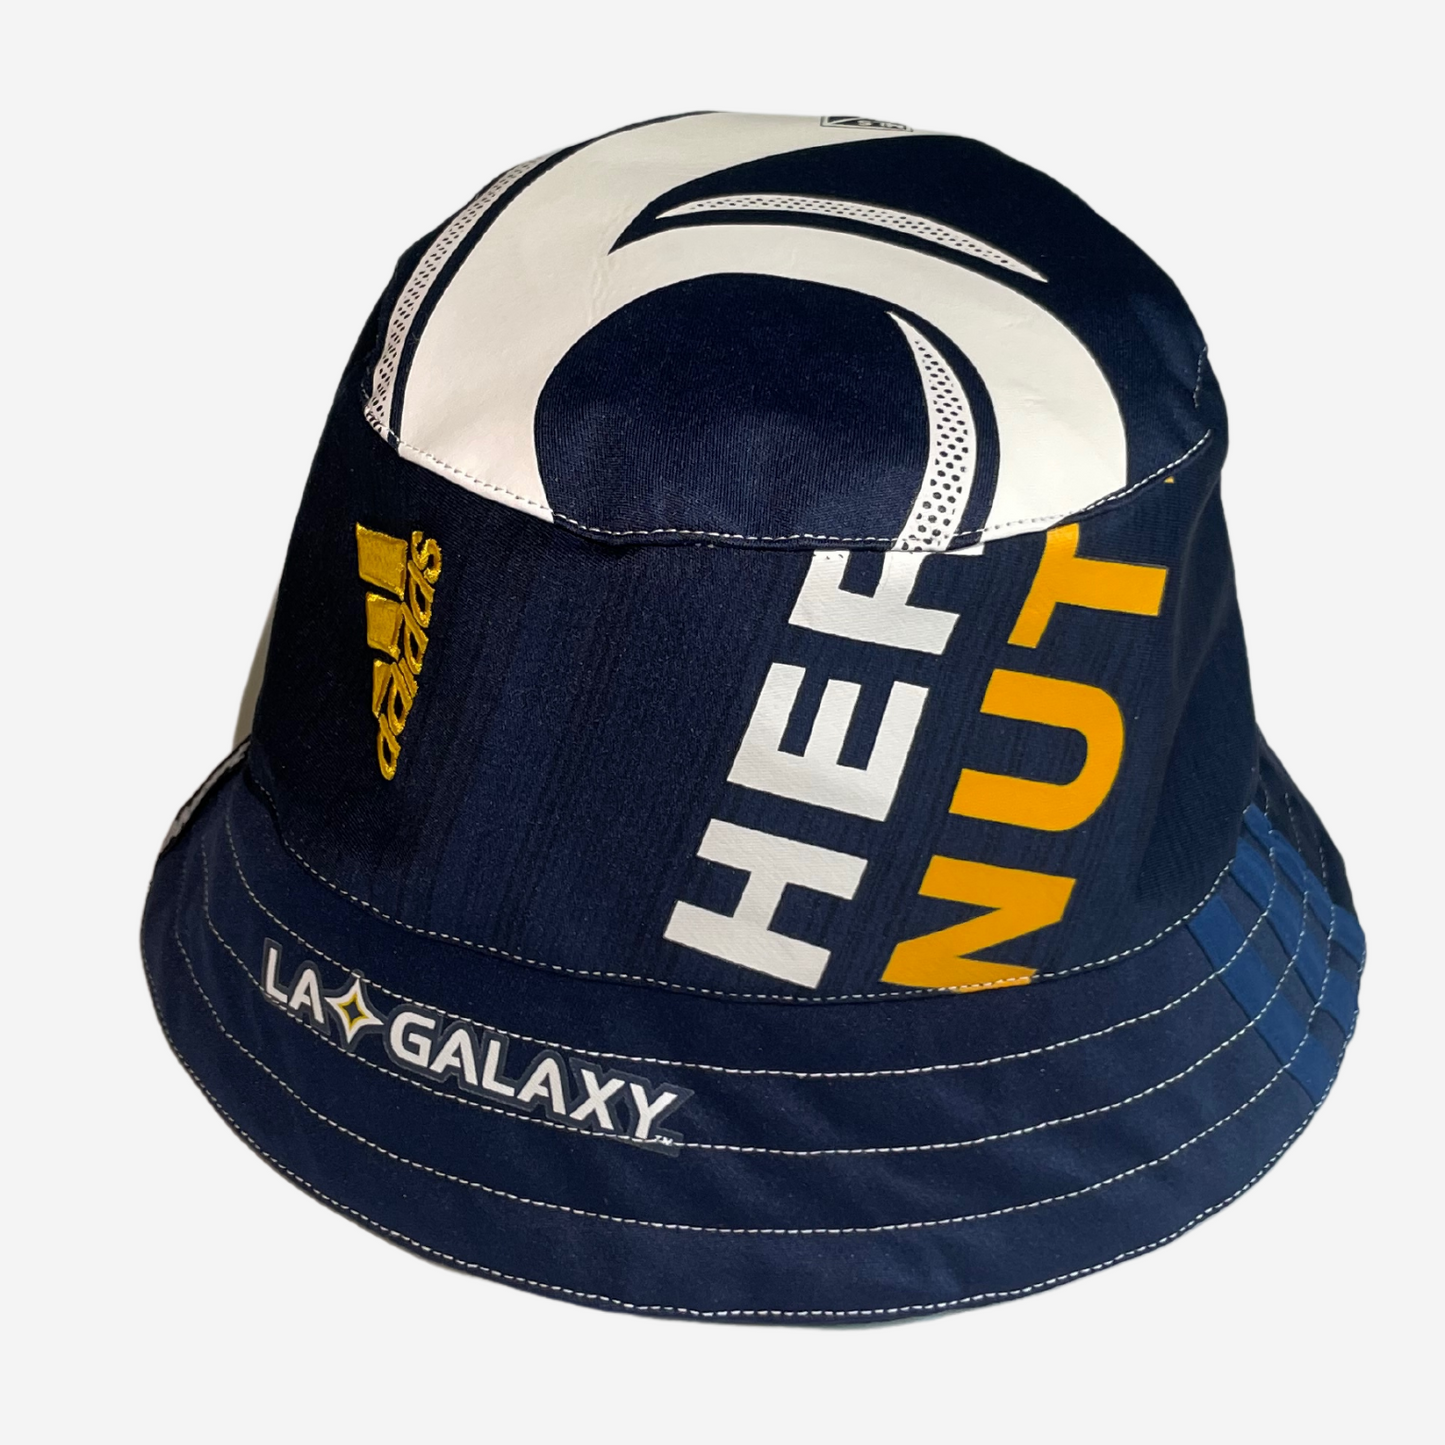 La Galaxy 2018 Away Kit